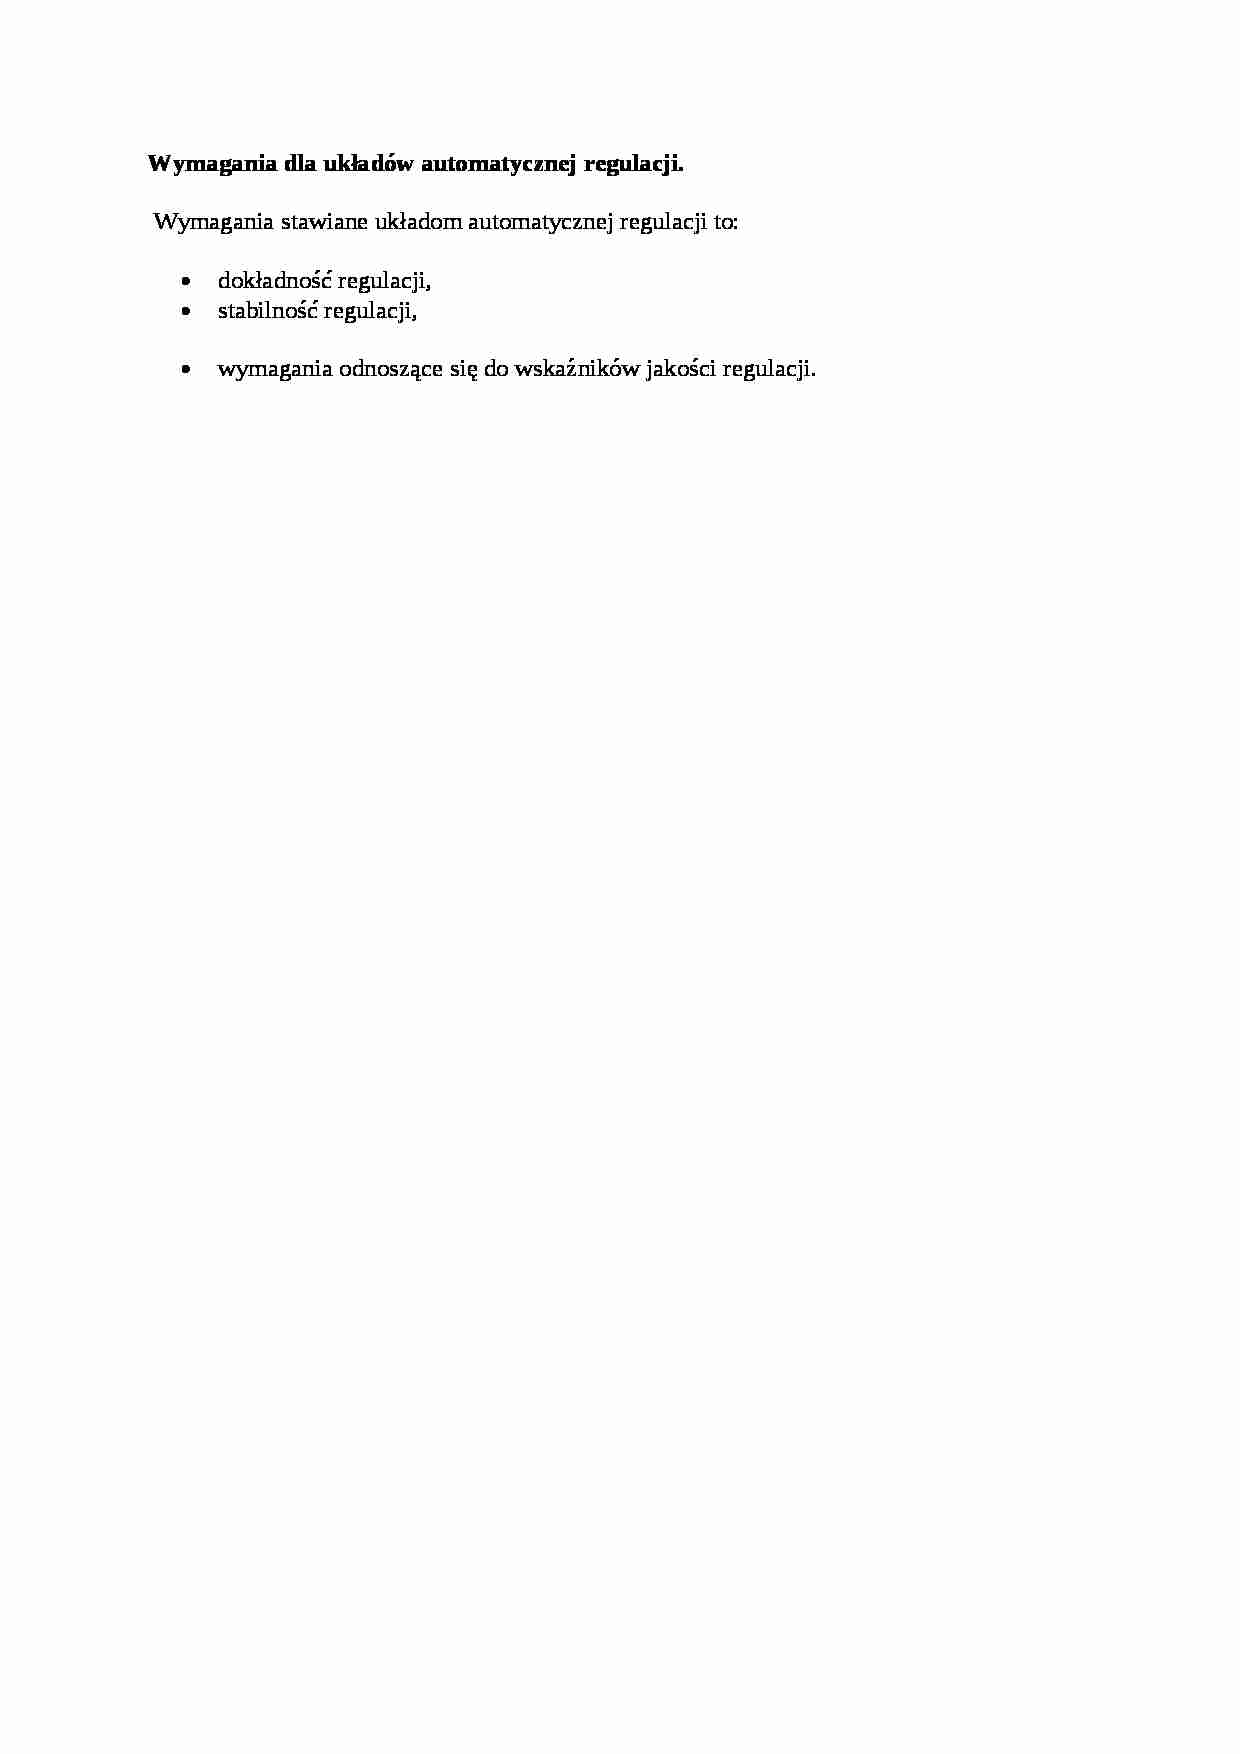 Wymagania dla układów automatycznej regulacji - opracowanie - strona 1